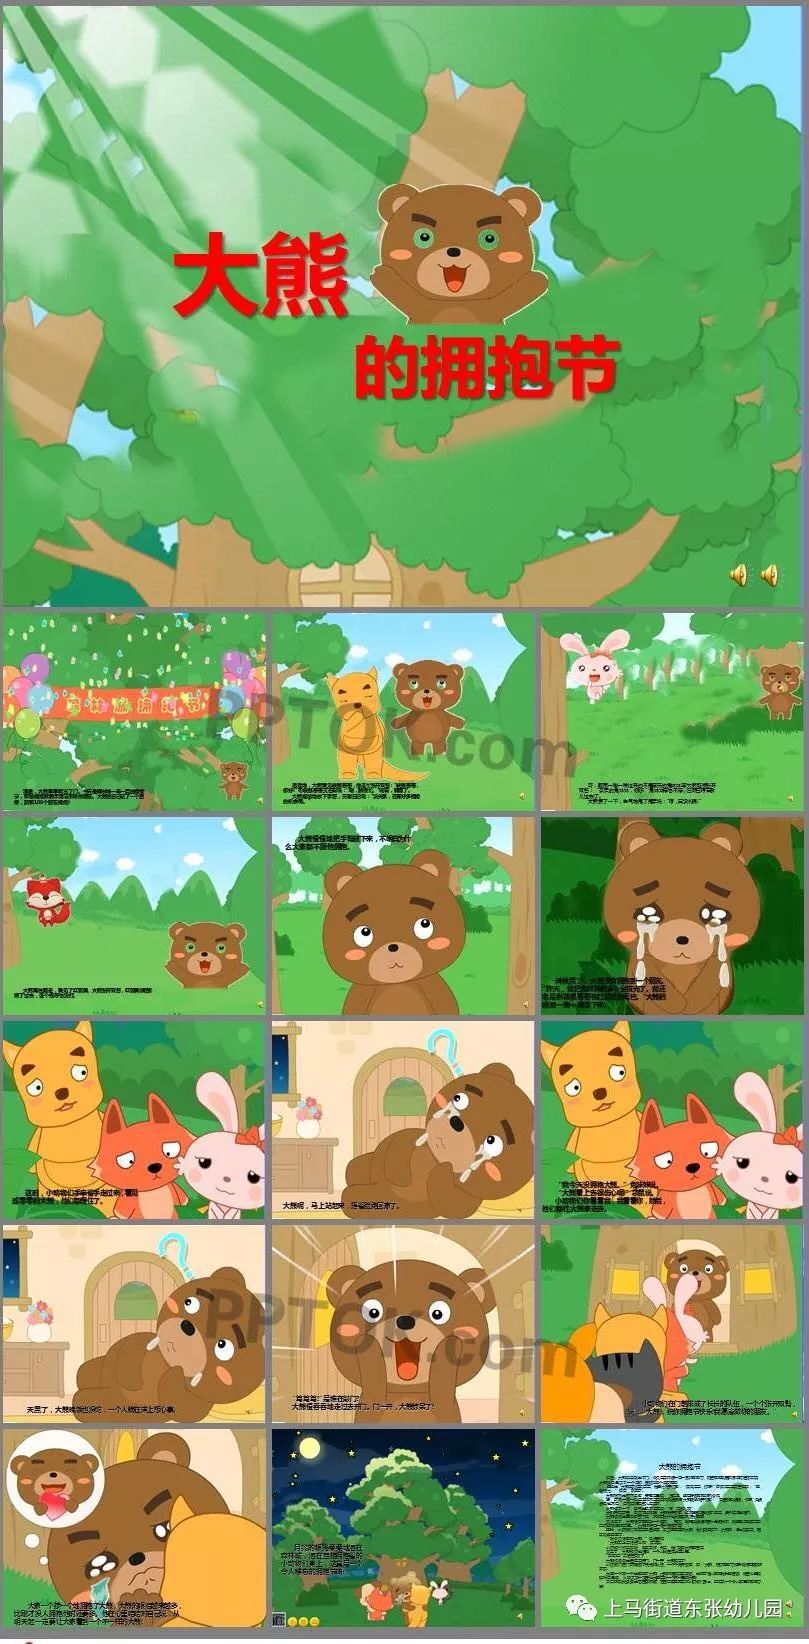 【追赶超越引领东张幼儿园幸福故事吧】——绘本故事《大熊的拥抱节》